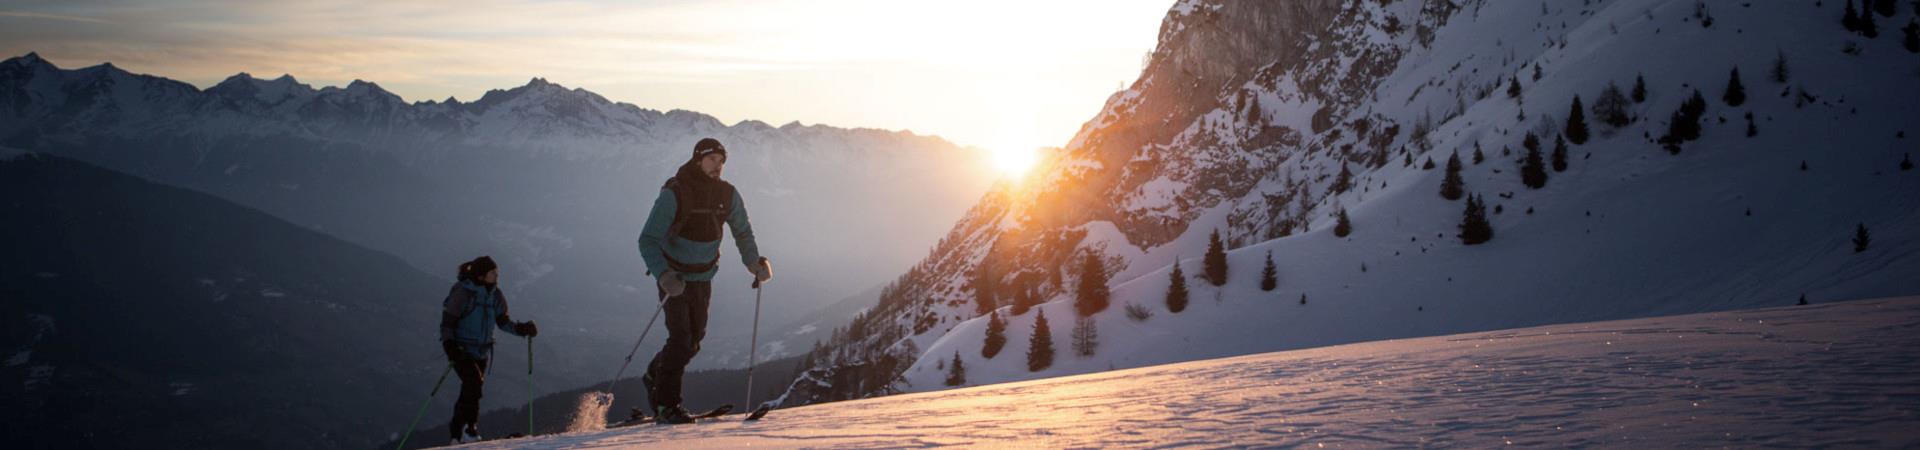 Skitourengeher+bei+Sonnenuntergang